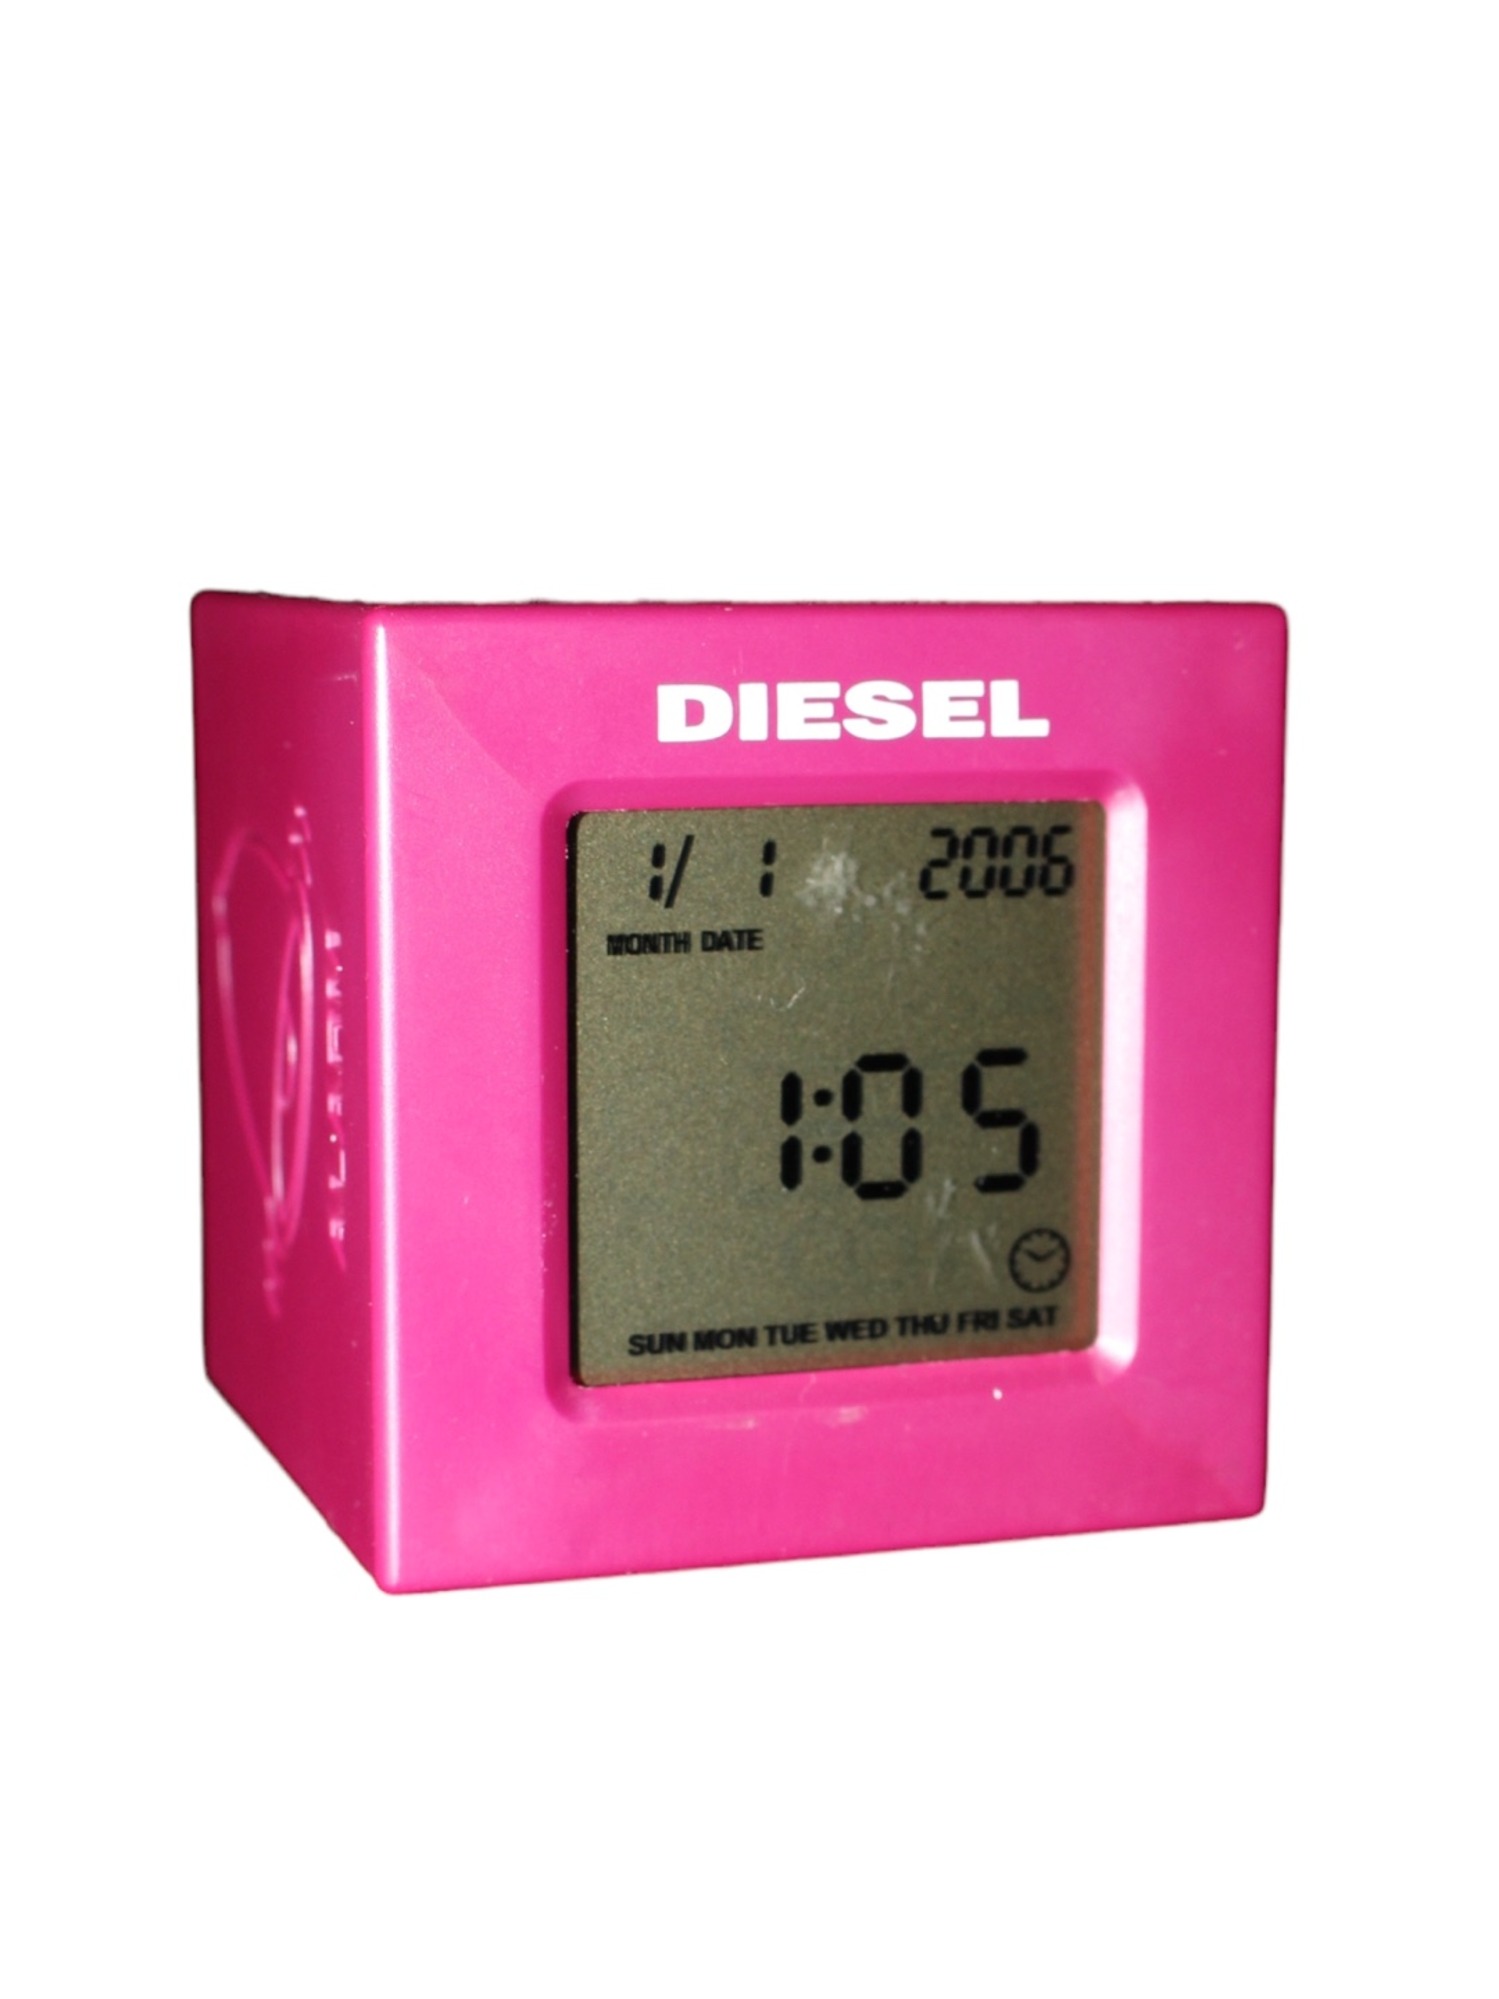 Diesel Alram Clock